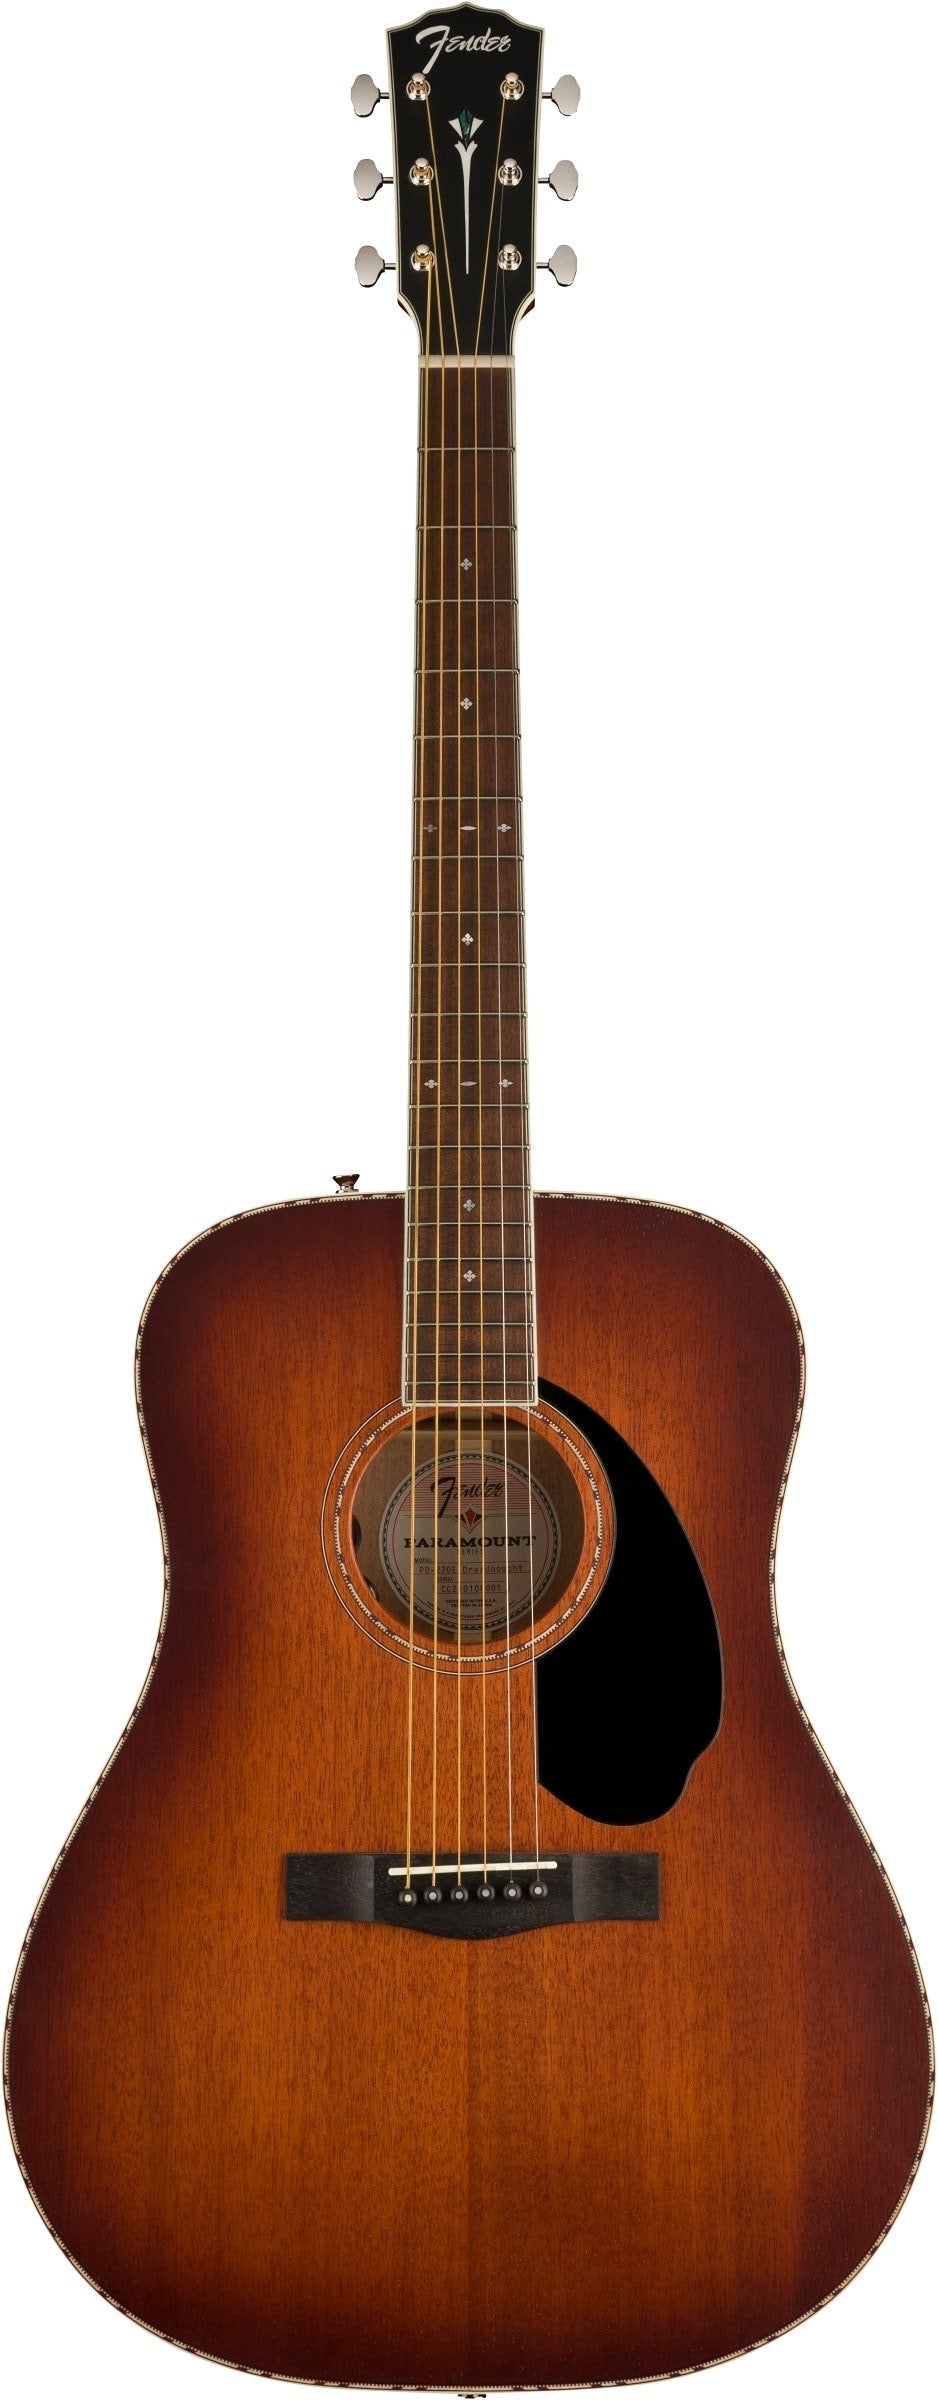 Fender Paramount PD-220E Acoustic Guitar - Aged Cognac Burst - Joondalup Music Centre